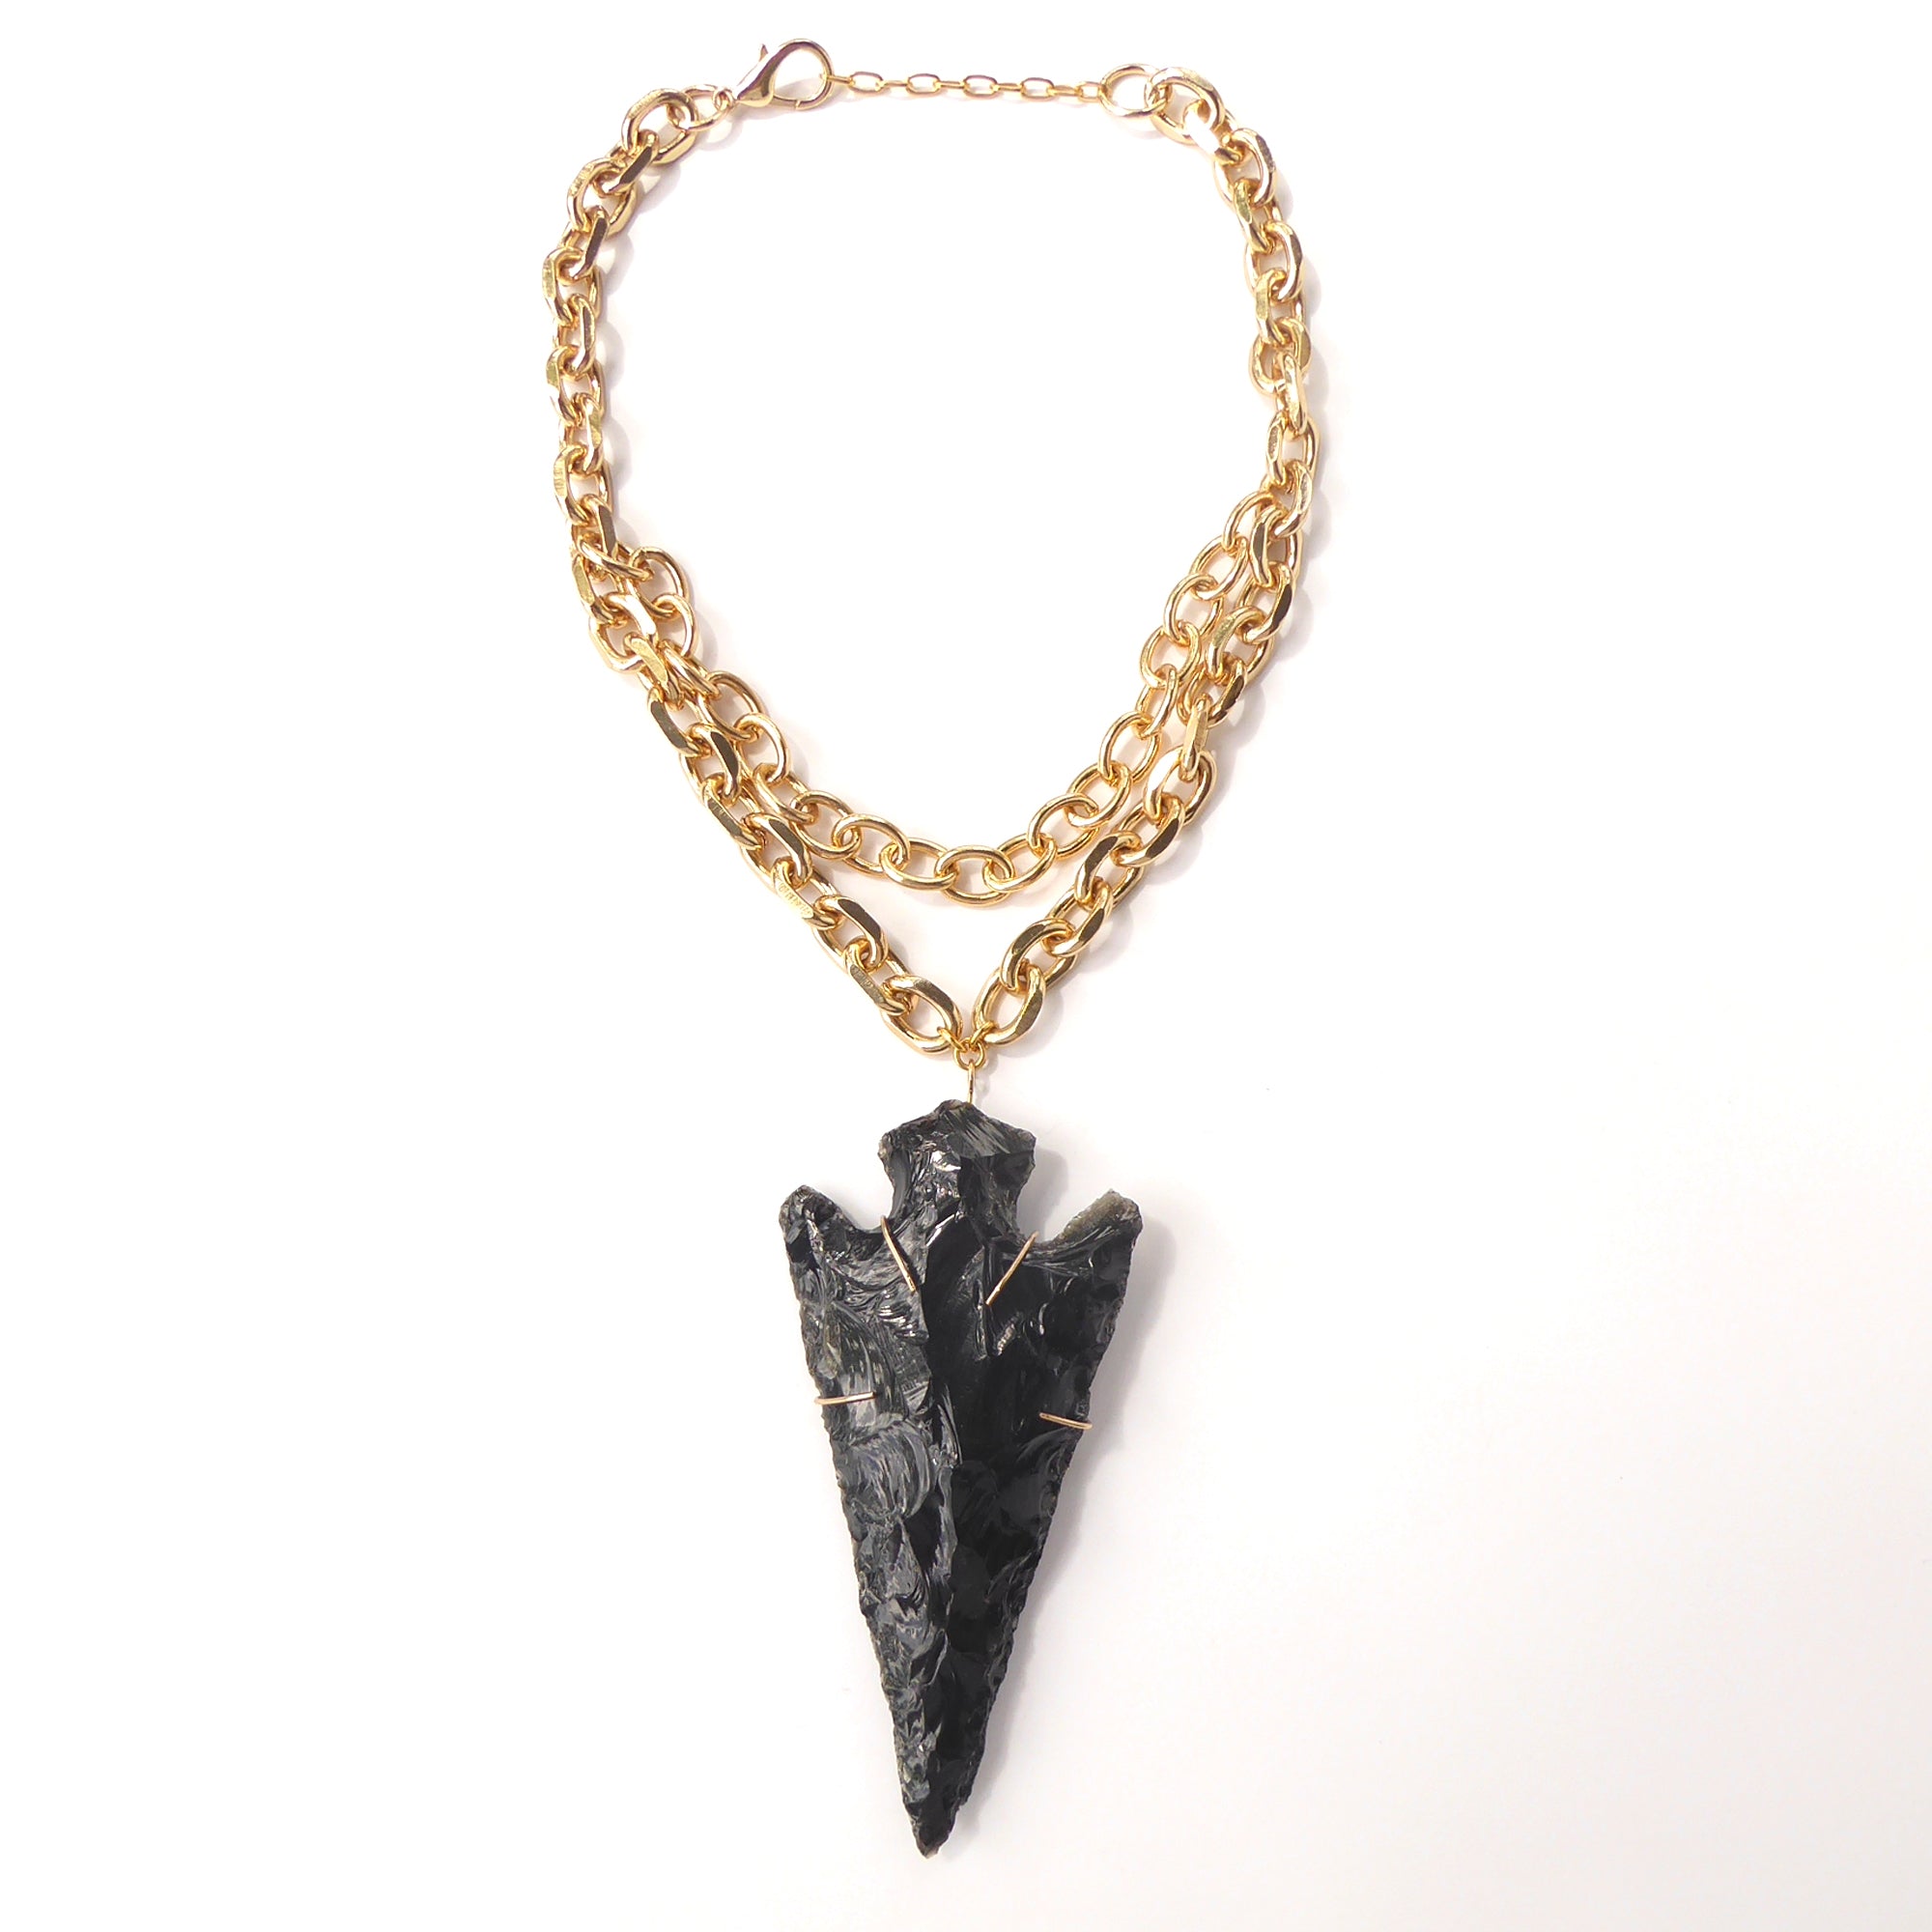 Obsidian arrowhead necklace by Jenny Dayco 5